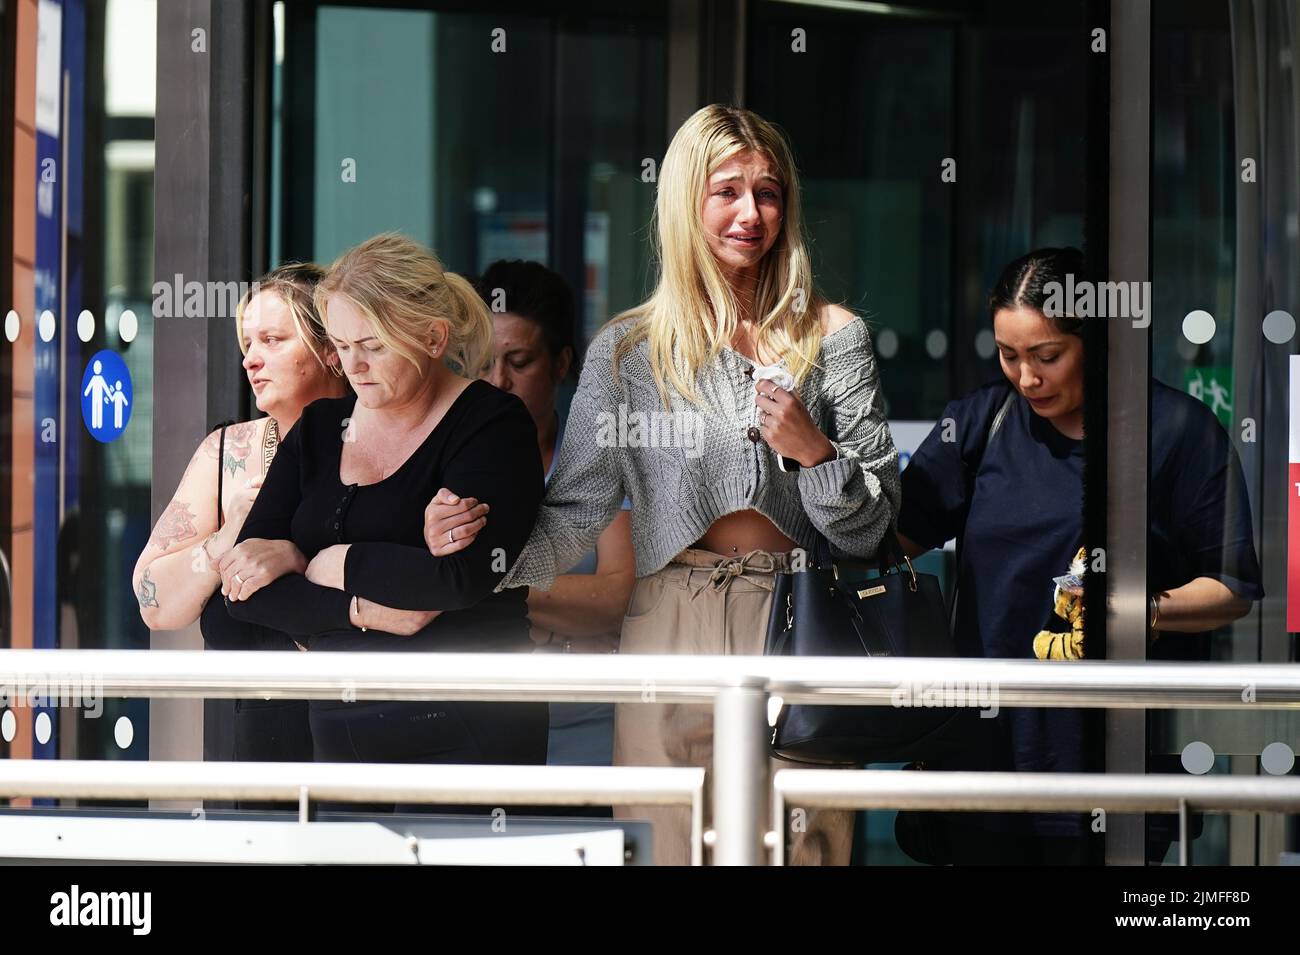 Hollie Dance (segunda a la izquierda) Rodeada por familiares y amigos, fuera del hospital Royal London en Whitechapel, al este de Londres, llegan para hablar con los medios de comunicación tras la muerte de su hijo de 12 años Archie Battersbee. Fecha de la foto: Sábado 6 de agosto de 2022. Foto de stock